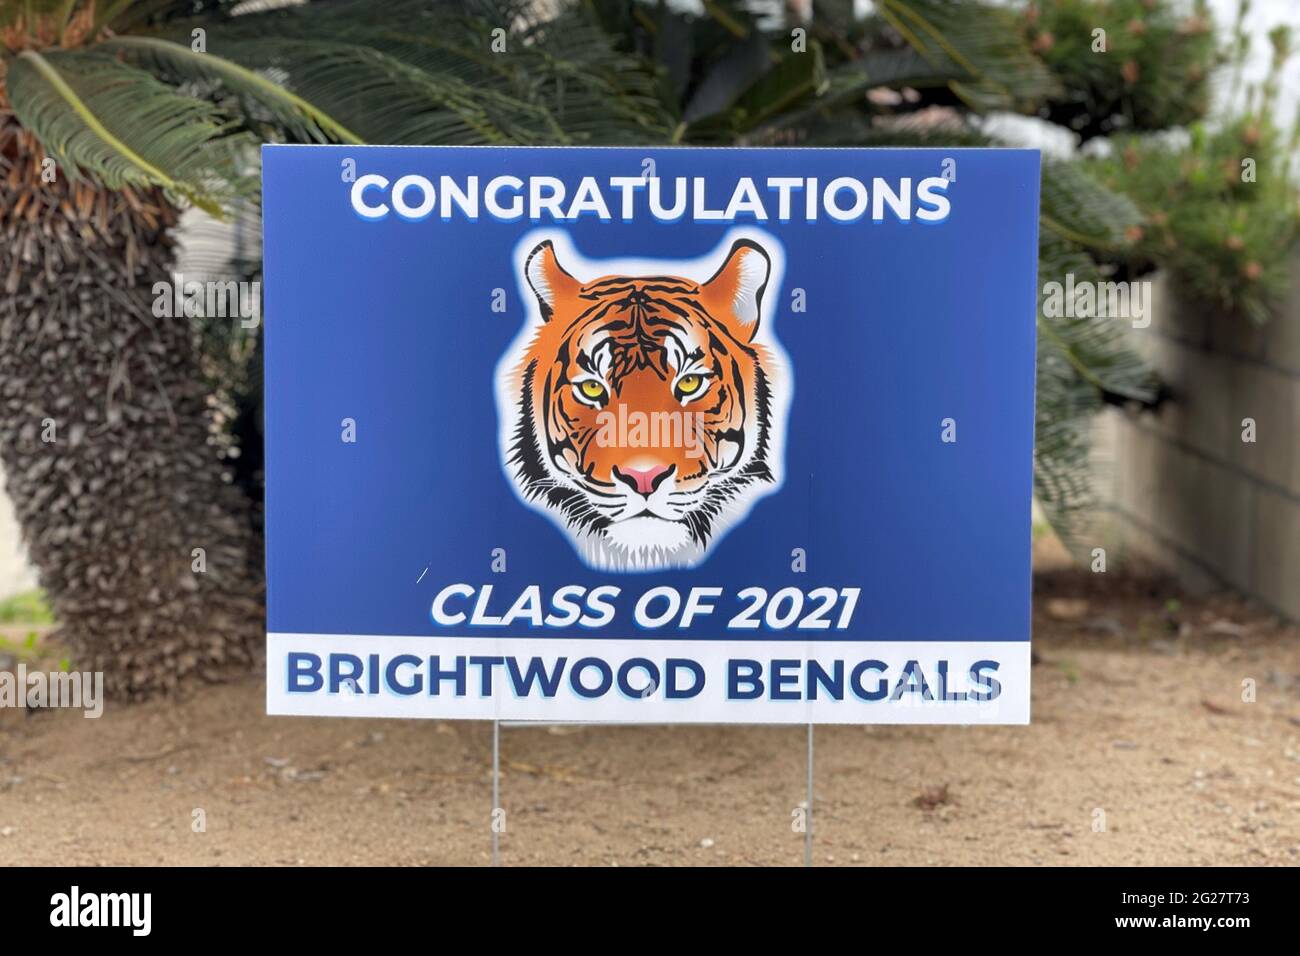 Una classe di congratulazioni di 2021 per gli studenti della scuola elementare di Brightwood, martedì 8 giugno 2021, in una residenza a Monterey Park, California. Foto Stock